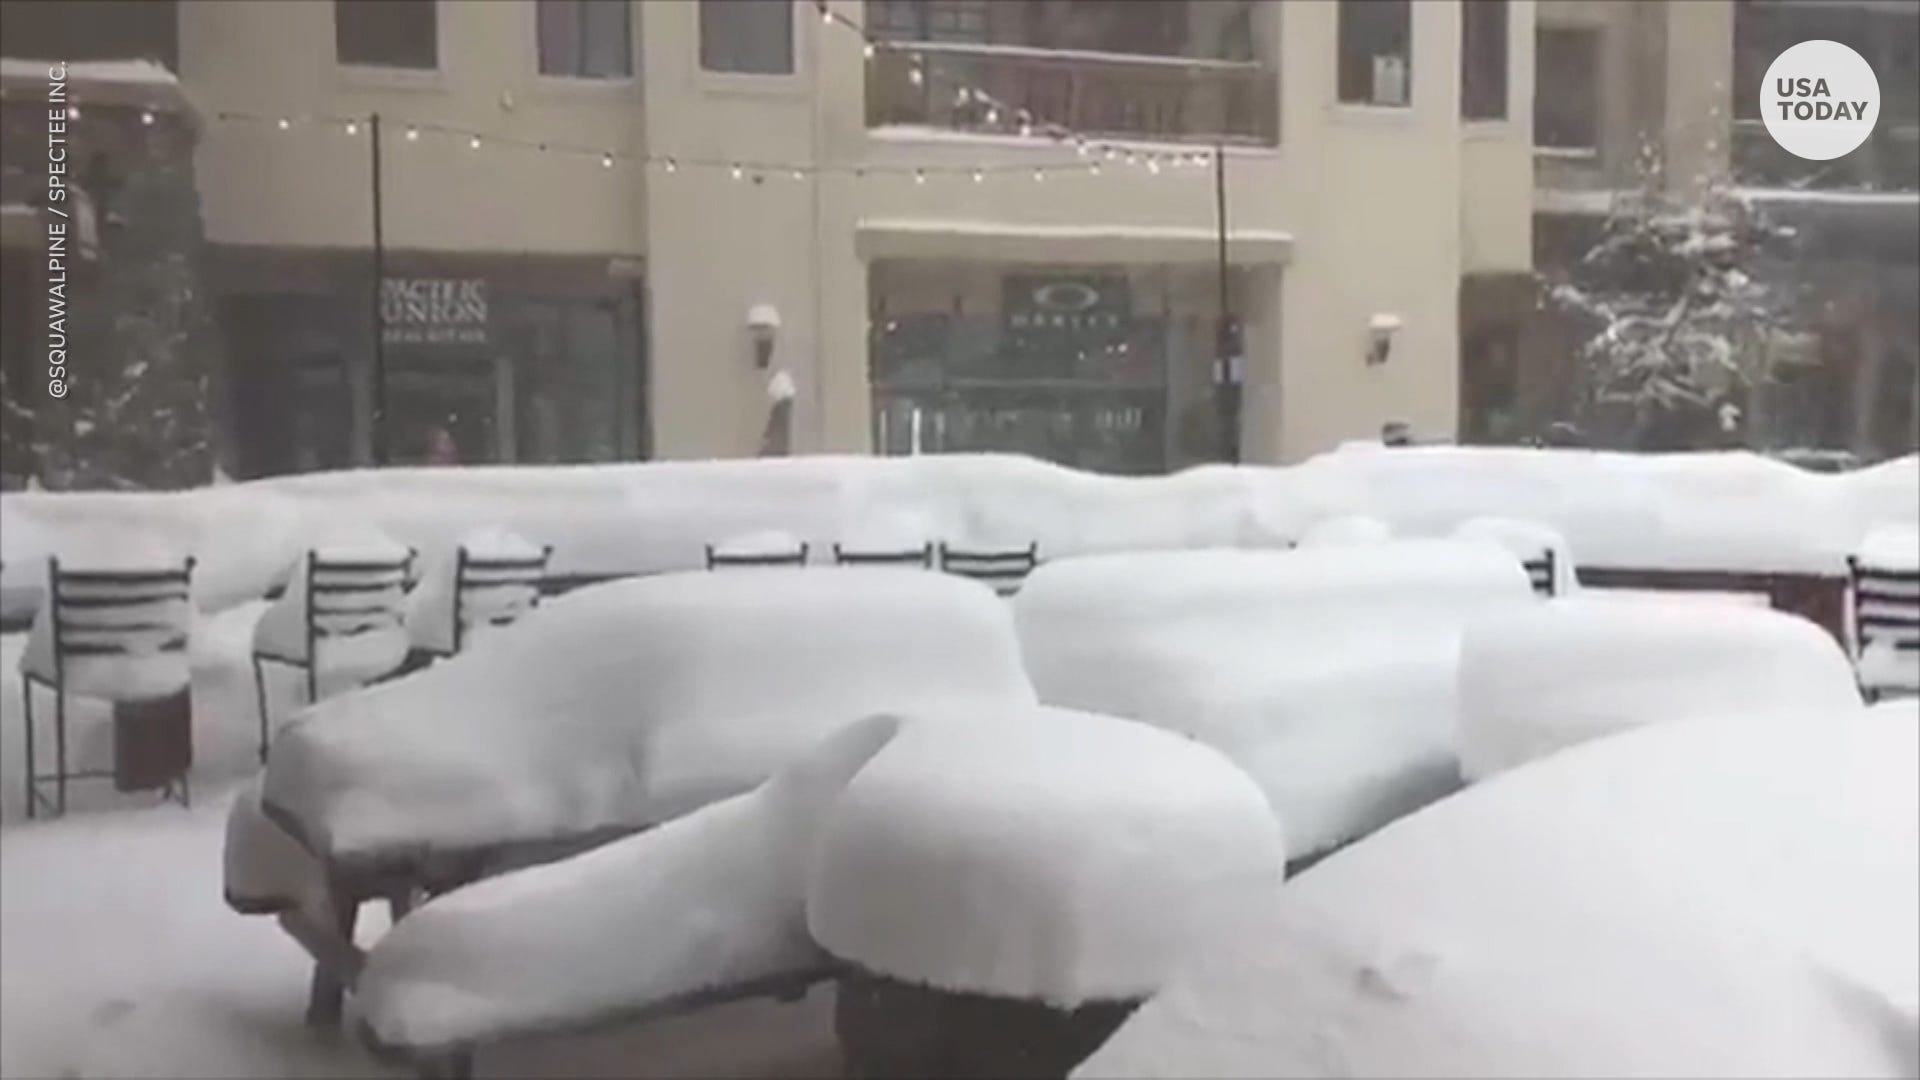 Blizzard warning in Lake Tahoe shuts down roads, schools